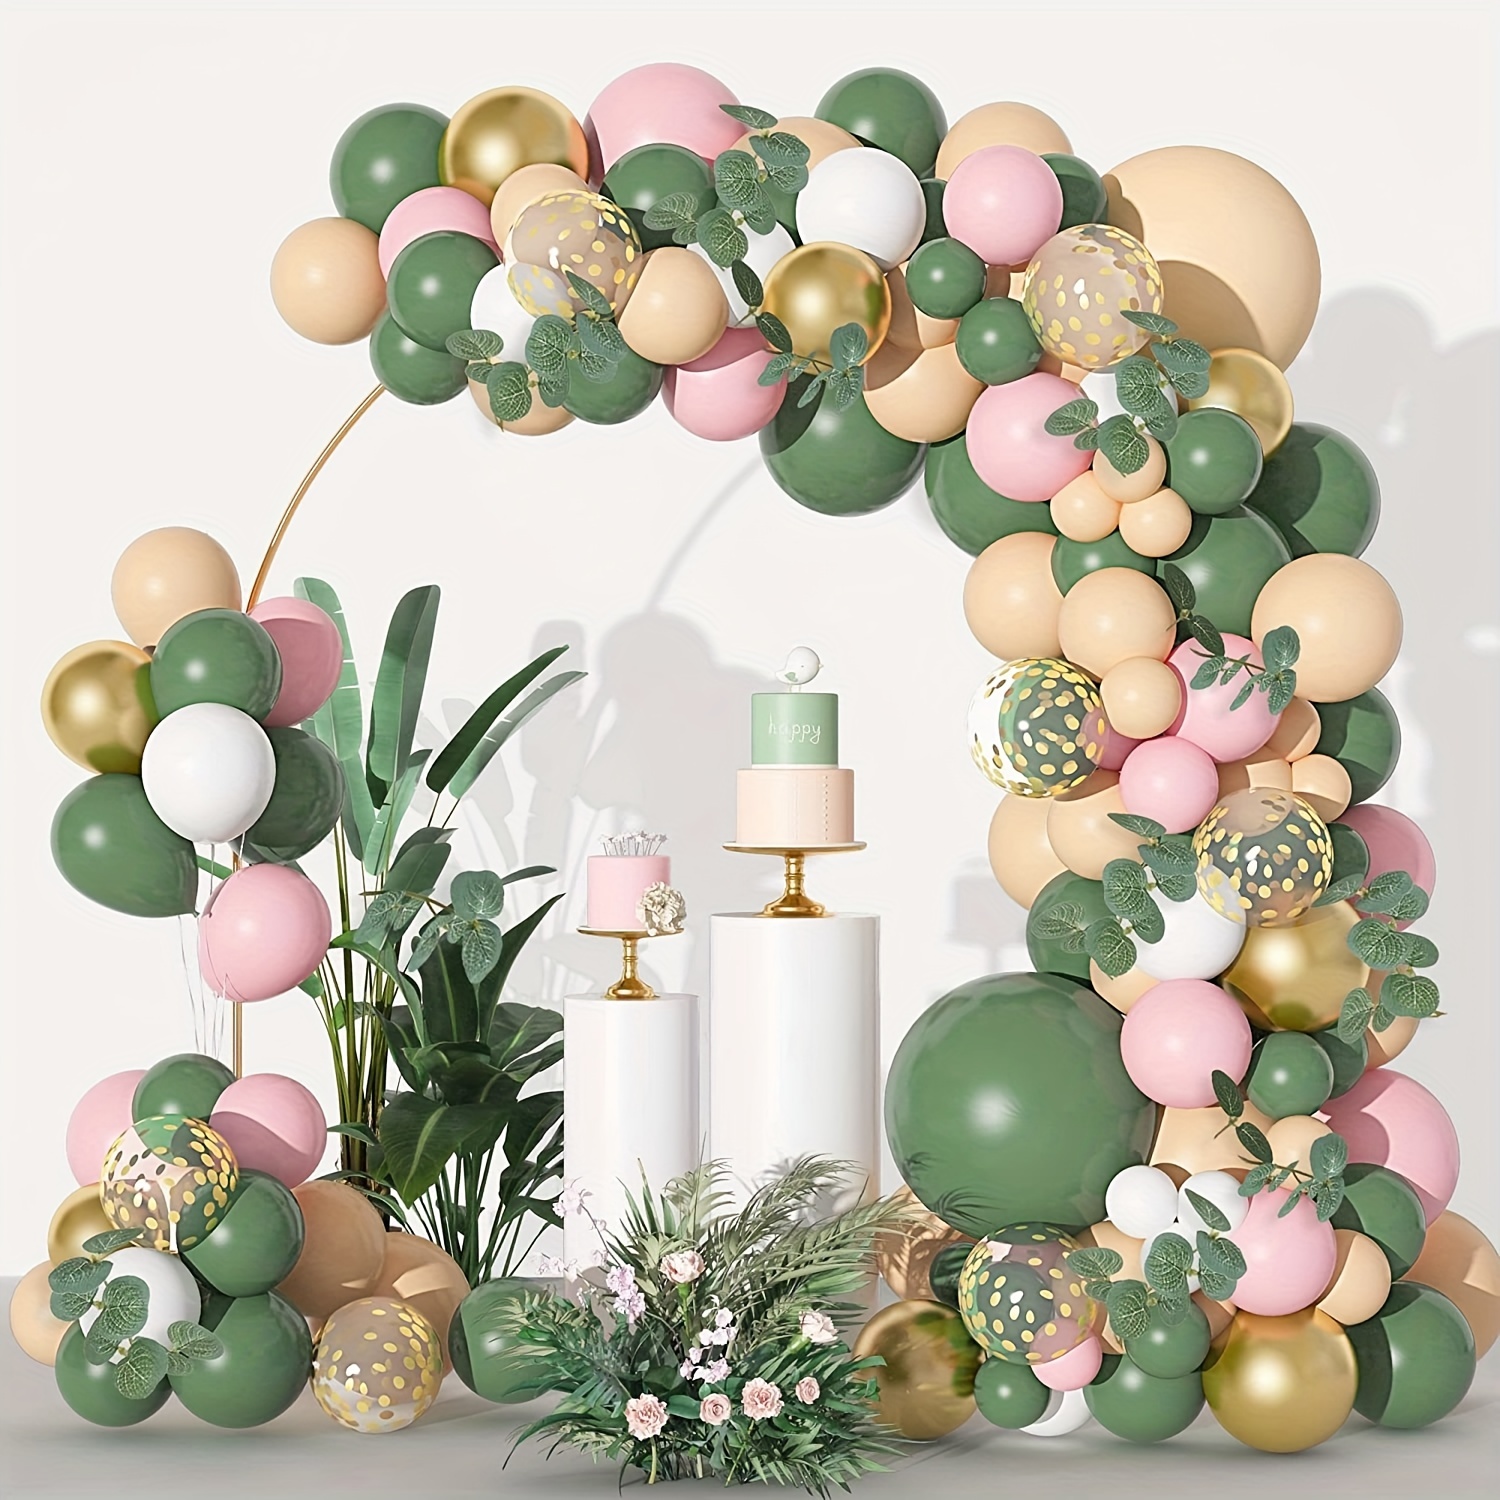 Globos de color verde salvia de 12 pulgadas, paquete de 50 globos de color  verde oliva, globos de látex para fiestas, cumpleaños, baby shower, boda